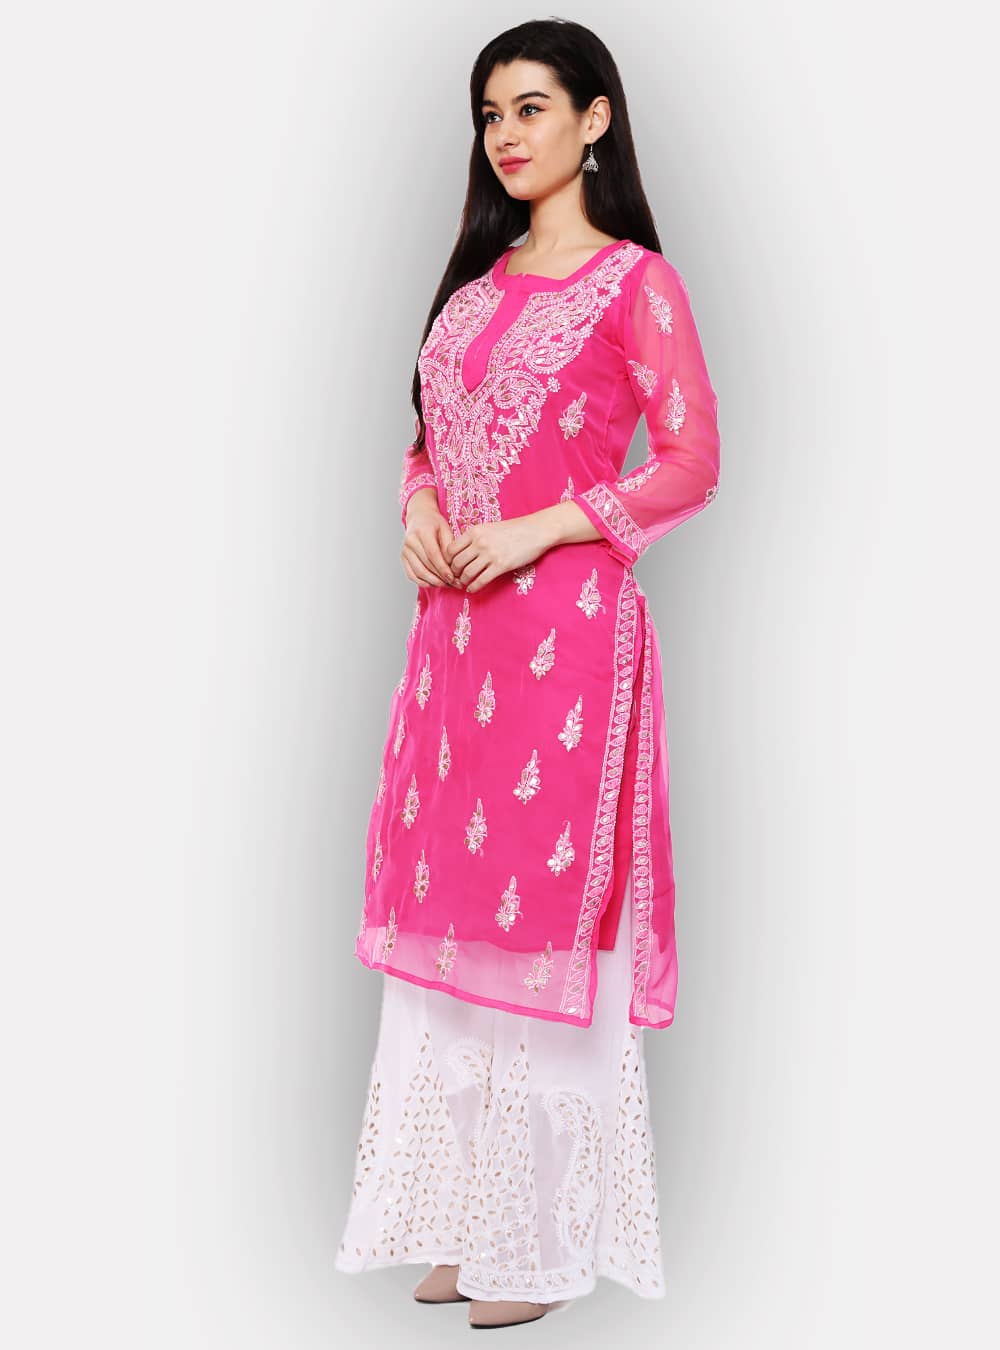 Aggregate more than 112 pink kurti matching leggings